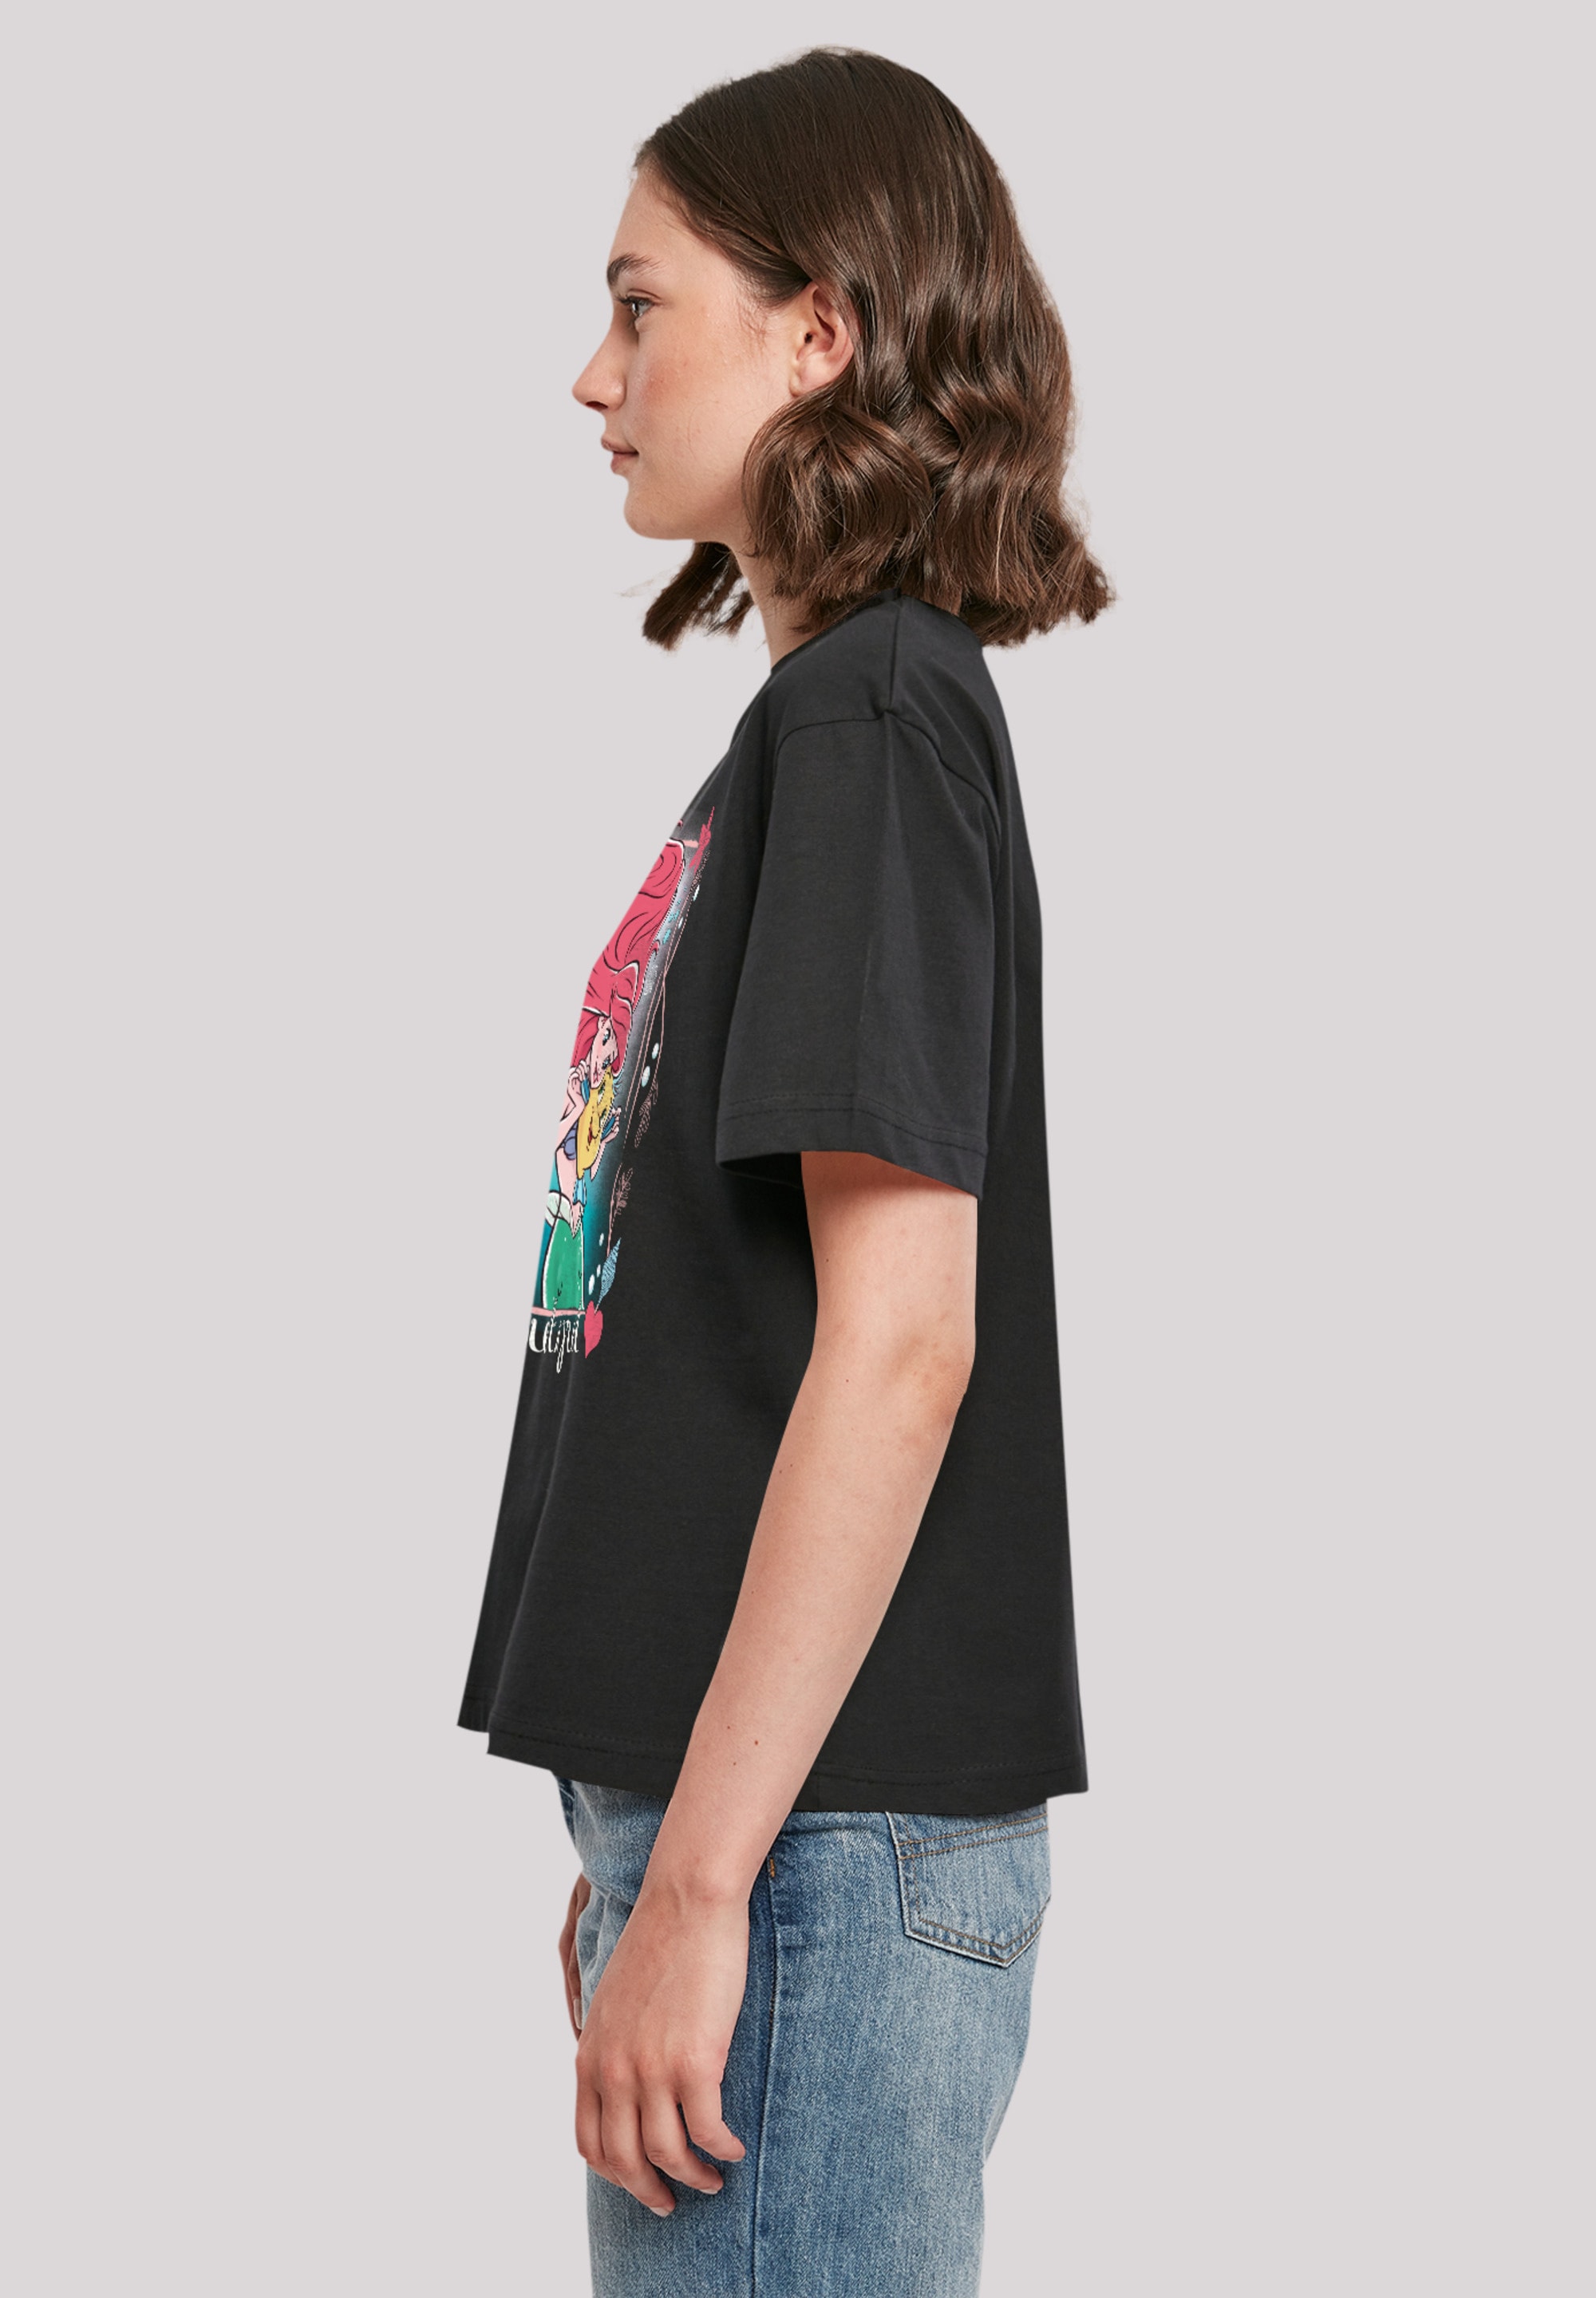 F4NT4STIC T-Shirt »Disney Prinzessin Arielle die Meerjungfrau«, Premium  Qualität online kaufen | I\'m walking